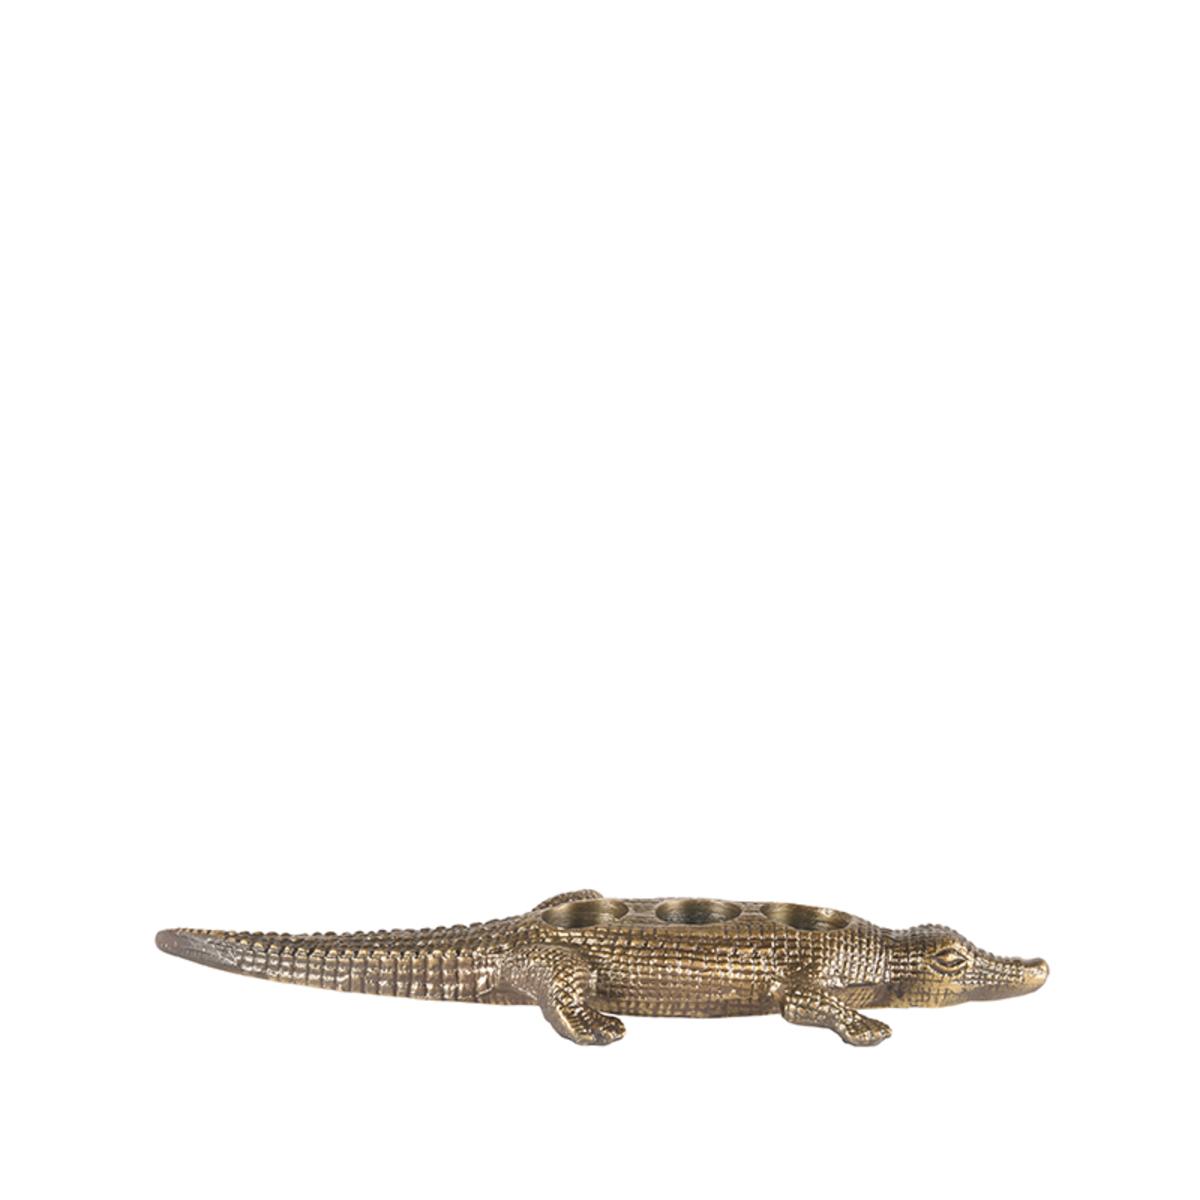  Krokodil - Antiek goud - Metaal afbeelding 4